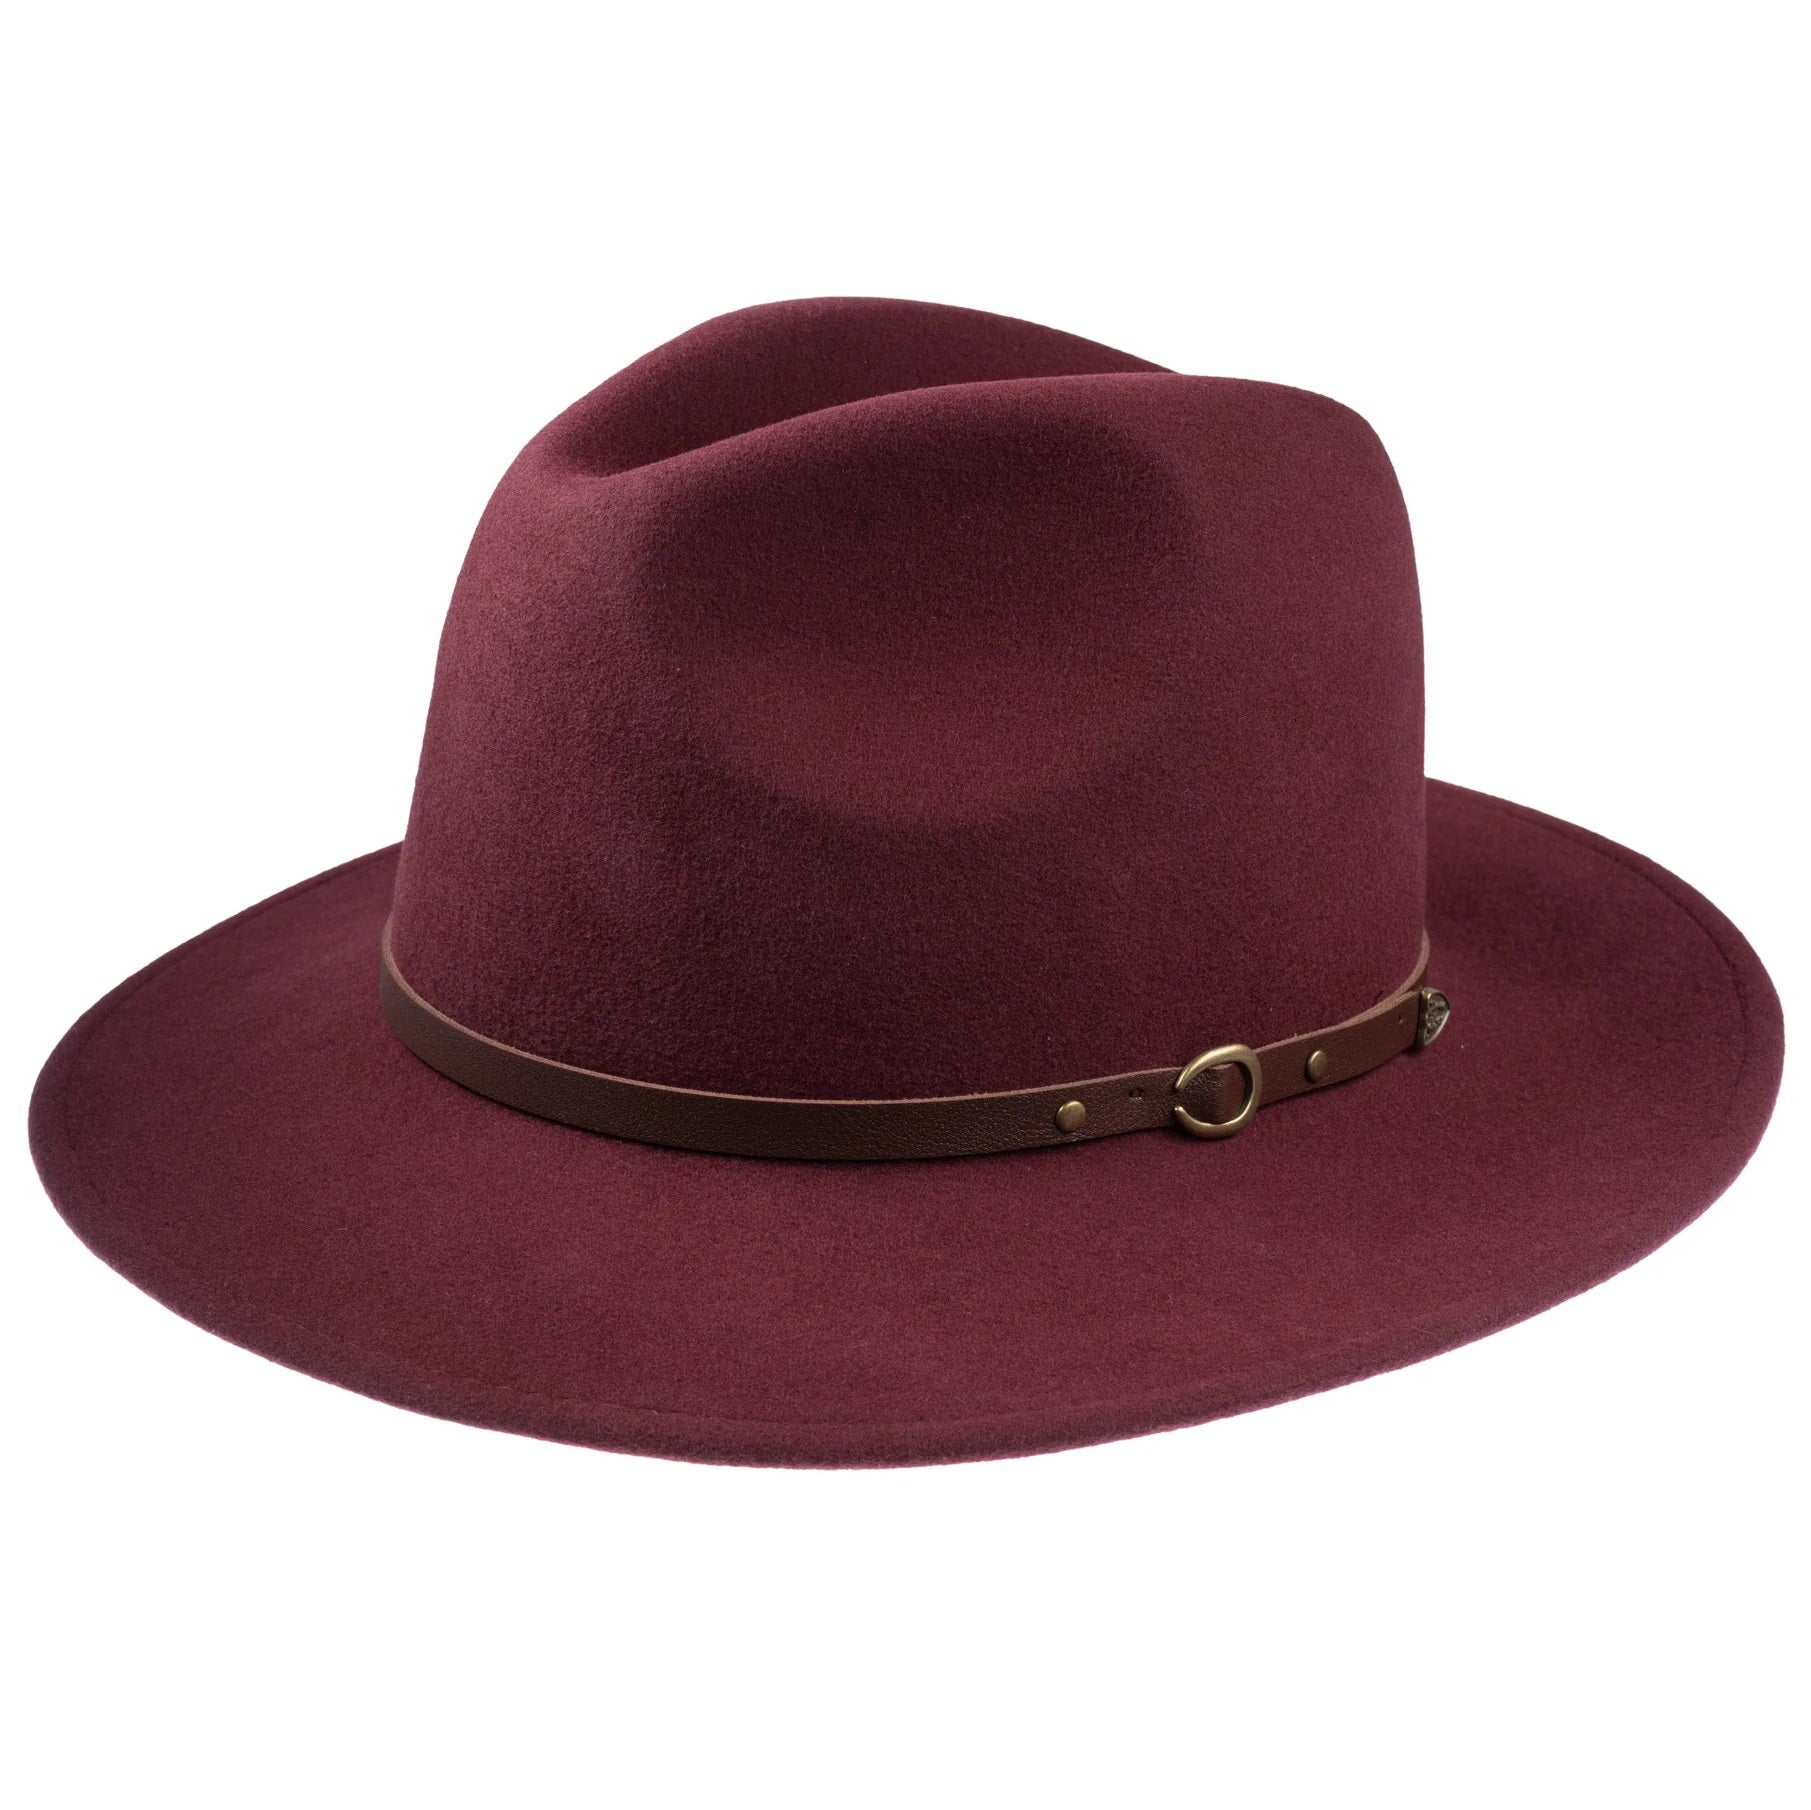 CHRISTYS' Crushable Wool Felt Safari Hat - Maroon